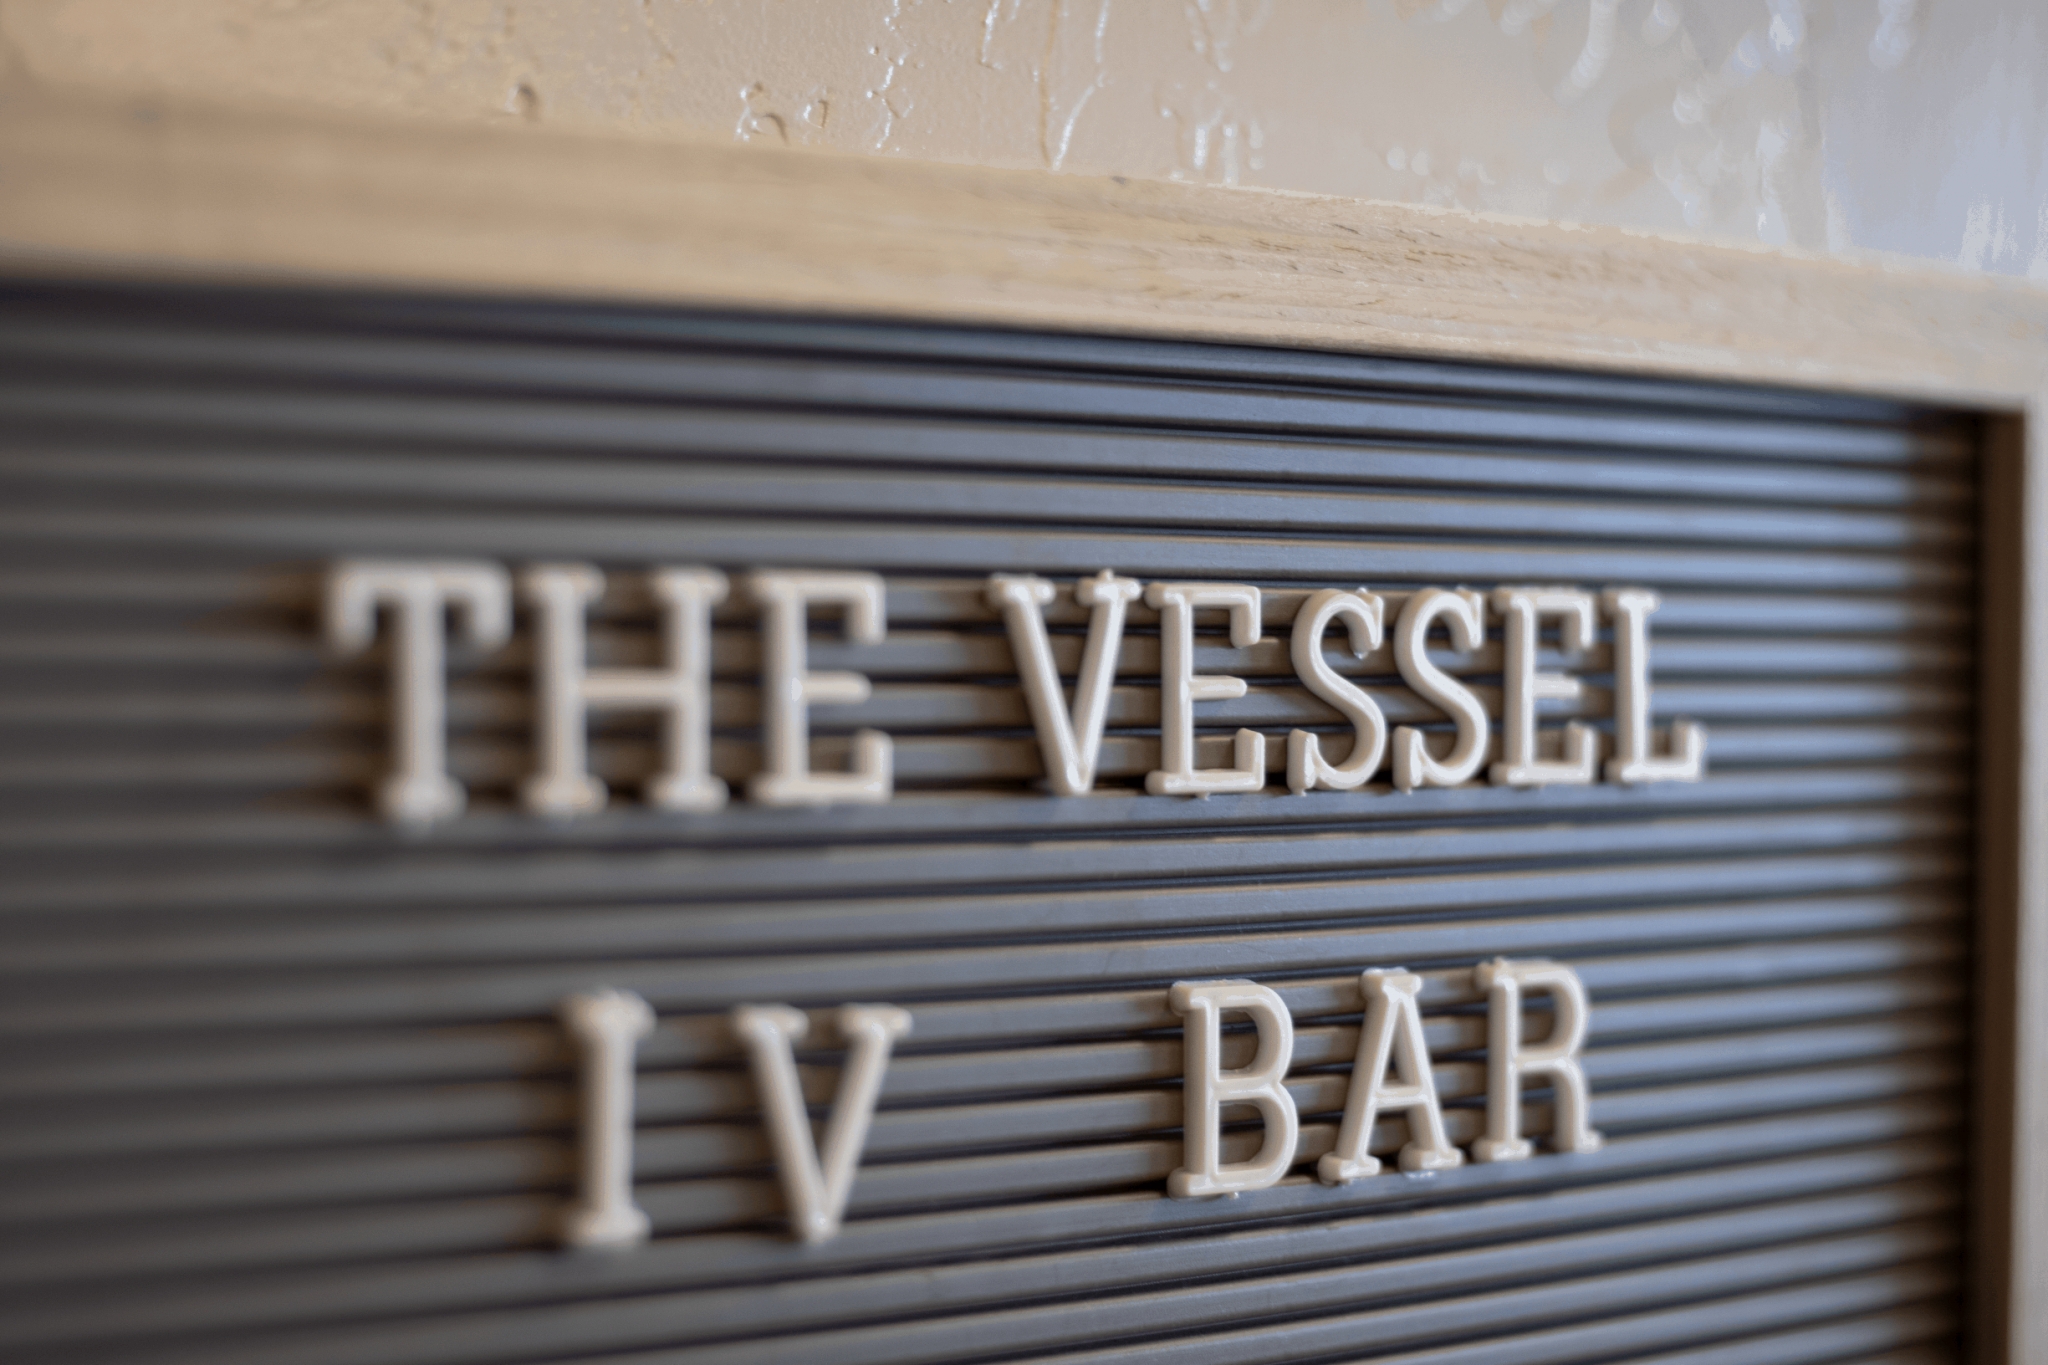 Vessel-iv-bar-sign